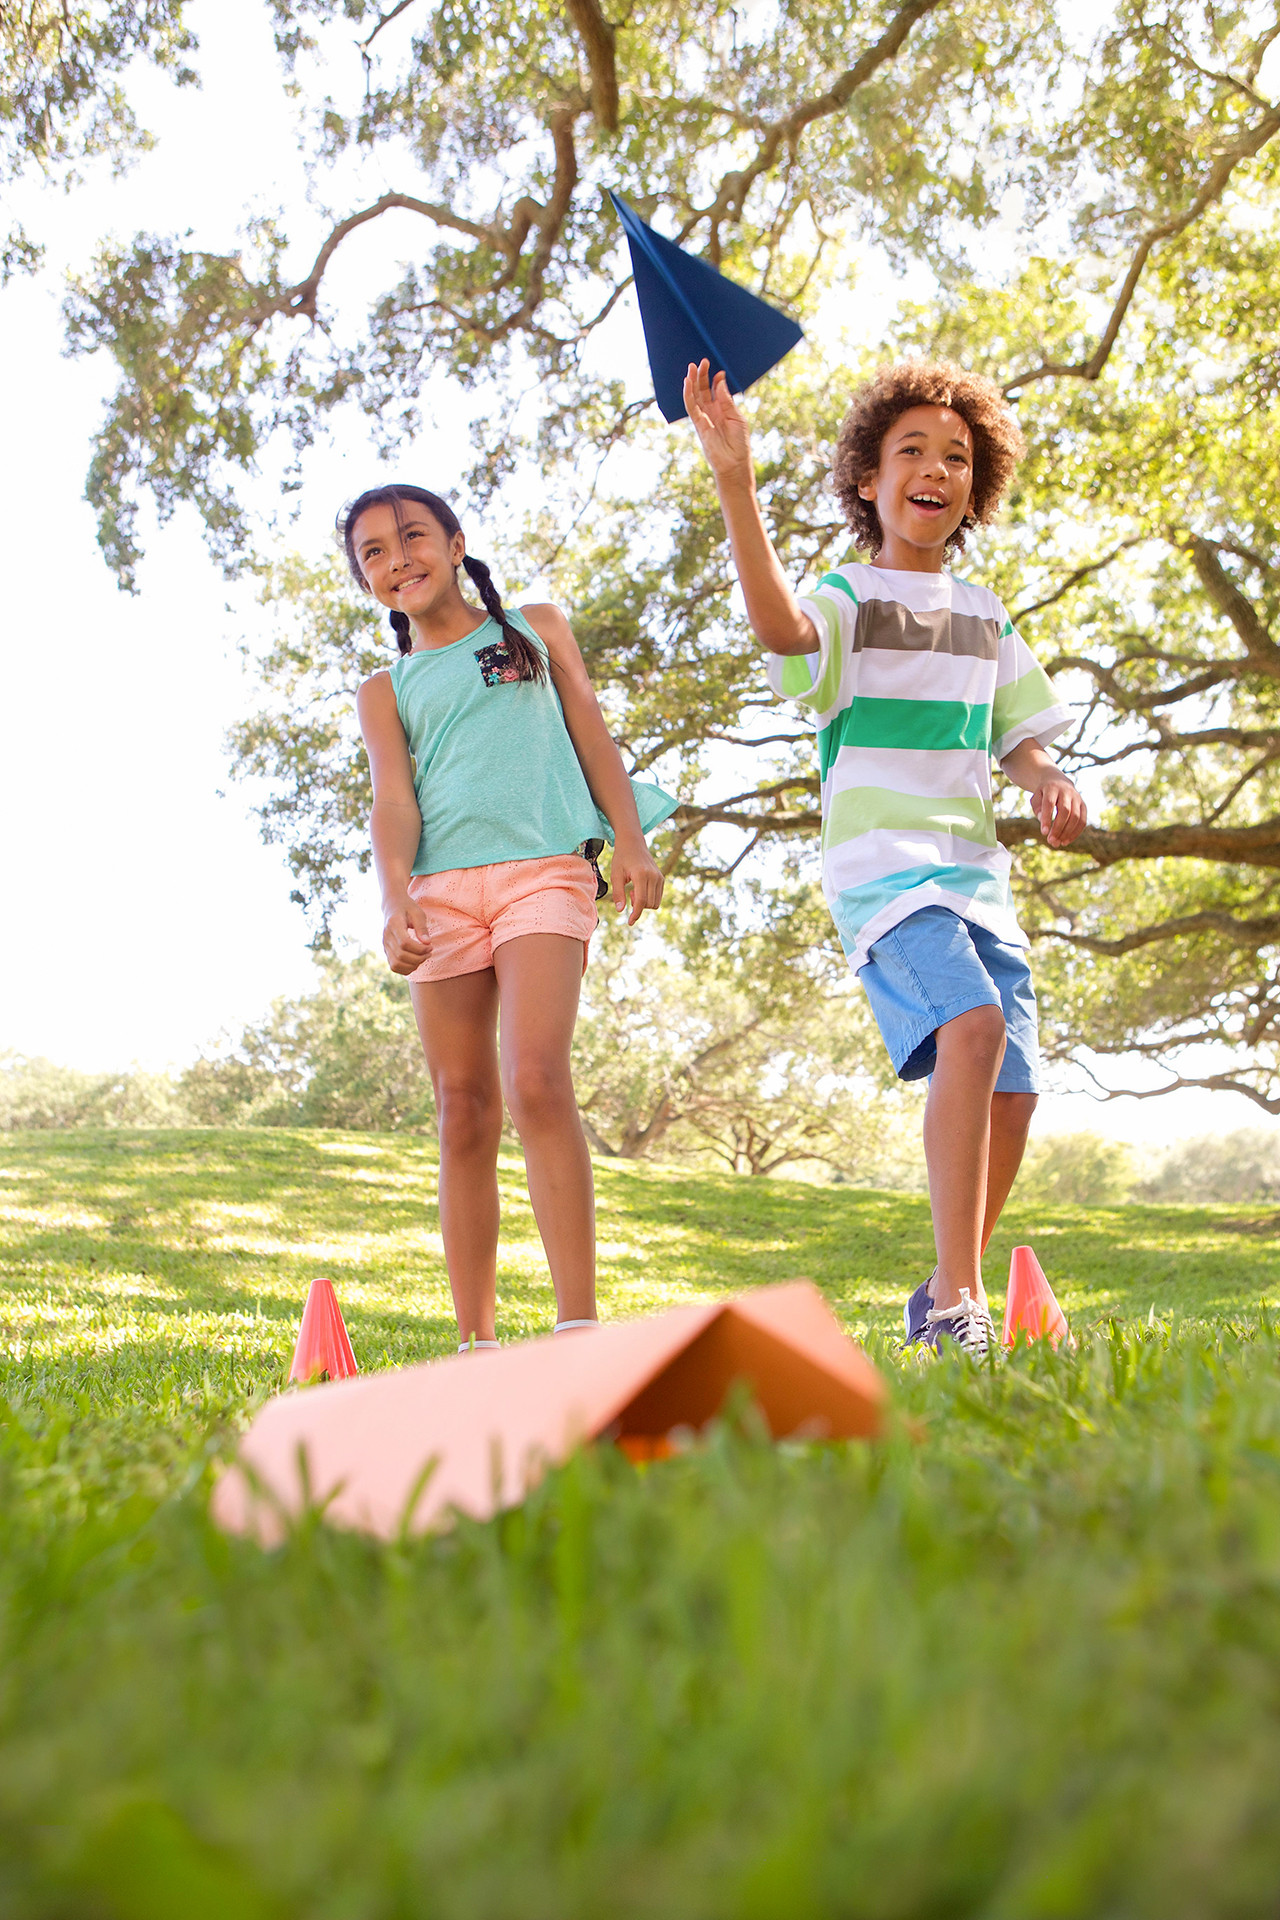 Fun Outdoor Activities For Kids
 37 Fun Outdoor Games for Kids Birthday Parties